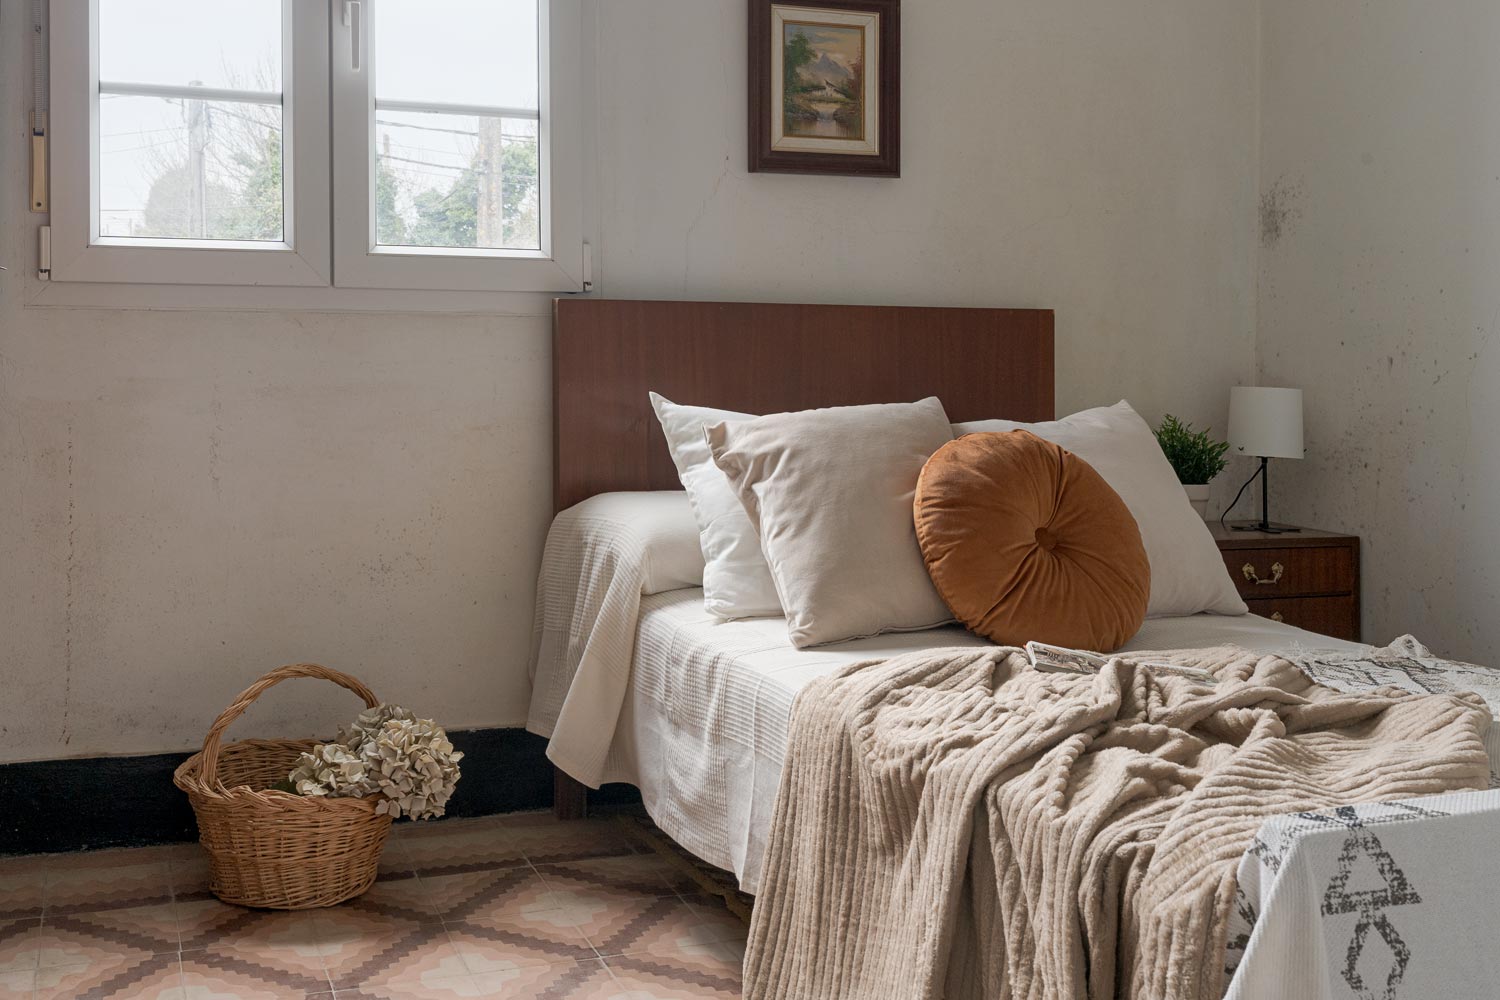 Dormitorio acogedor con cama de madera, detalles decorativos en tonos neutros y luz natural entrando por la ventana, en una casa de Bergondo, A Coruña.